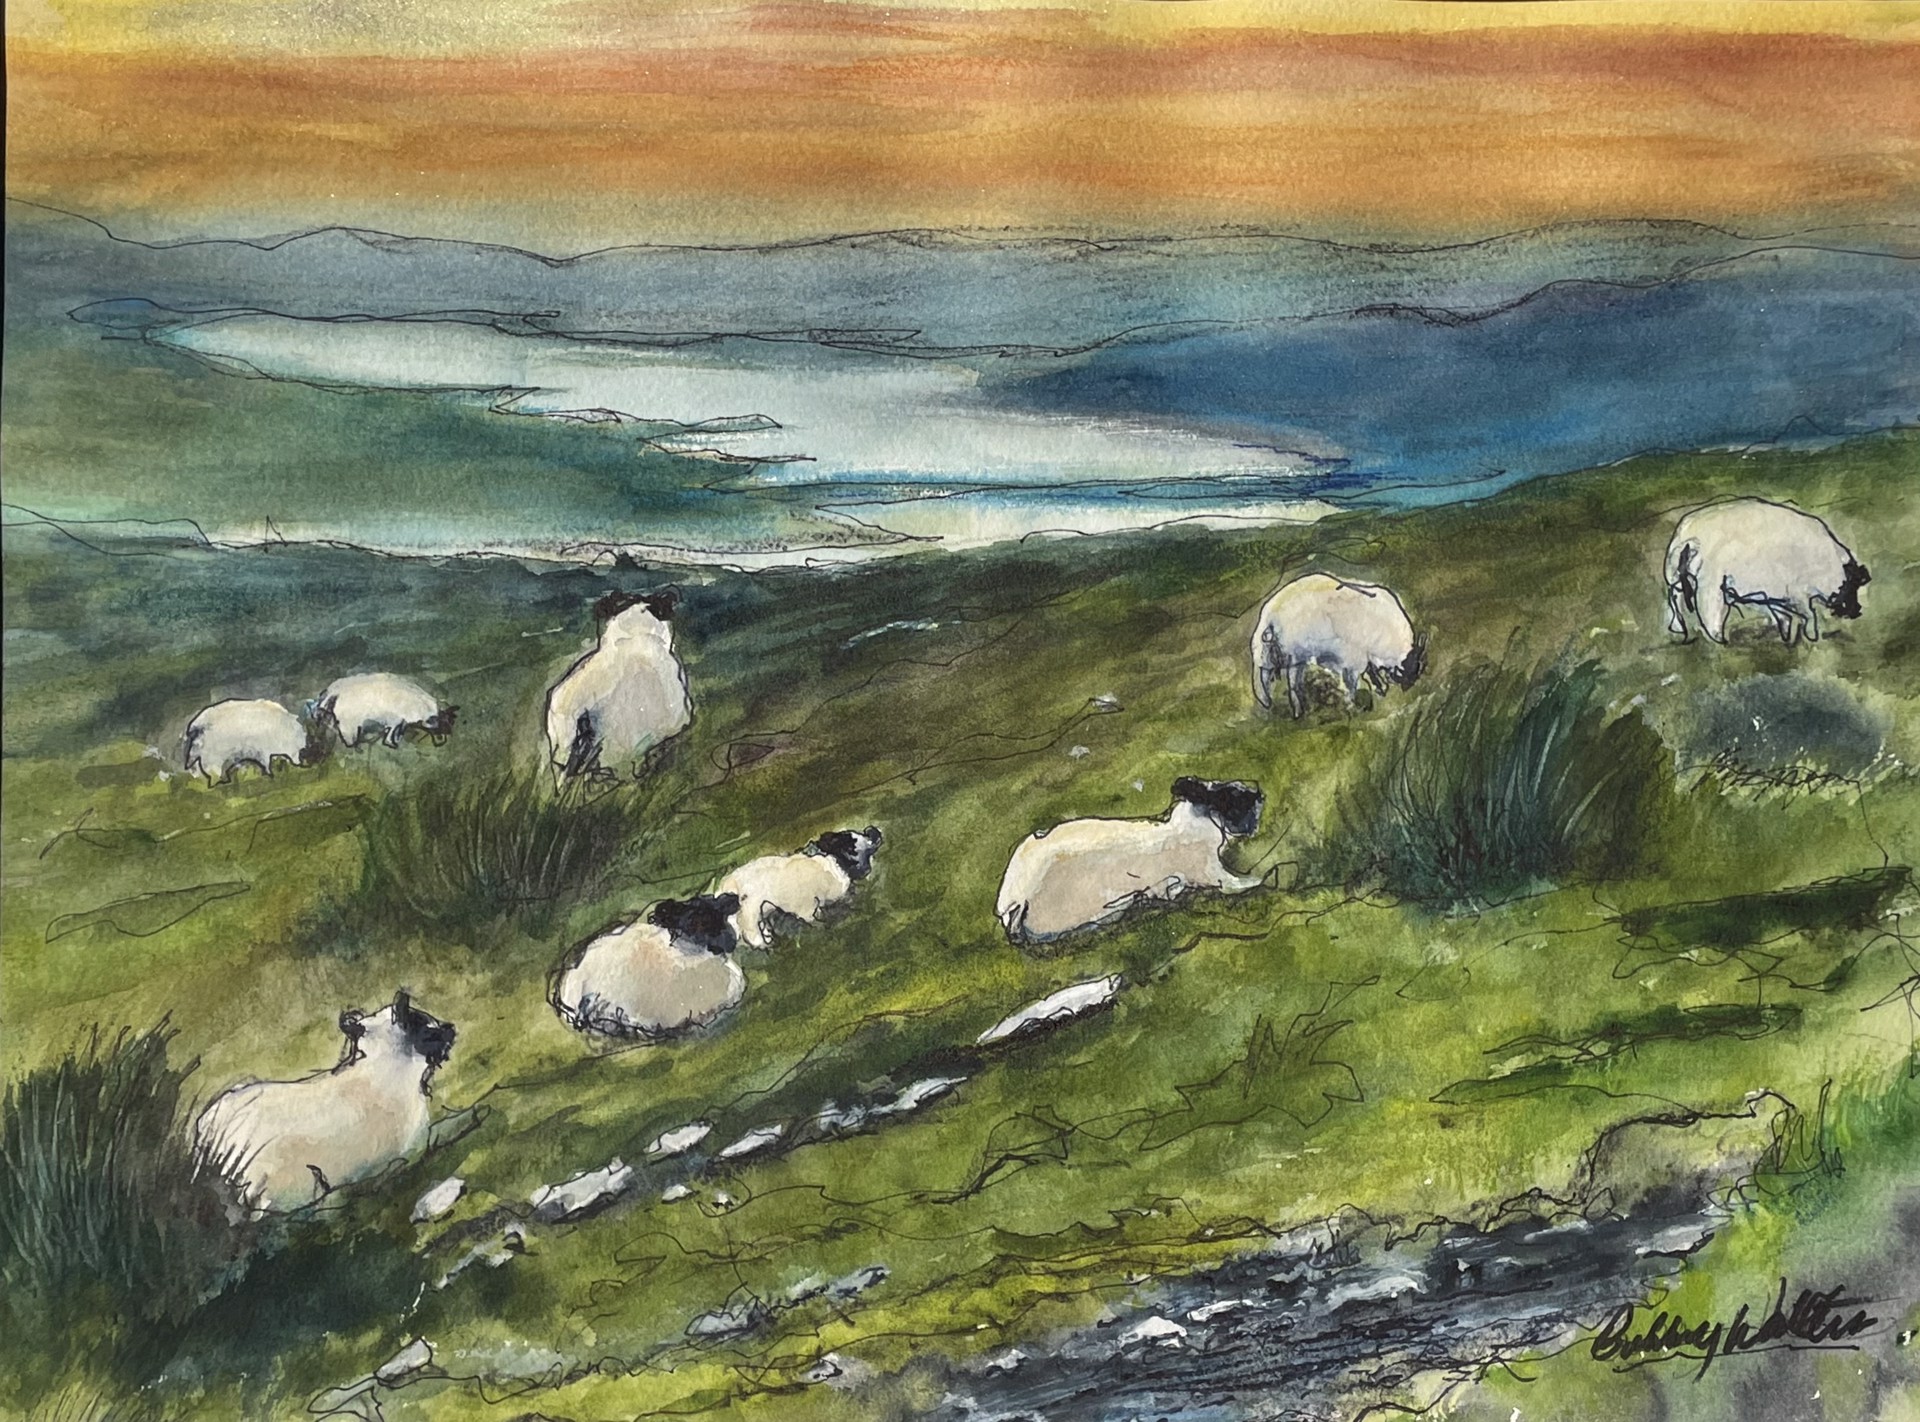 Irish Sheep by Bobby Walters